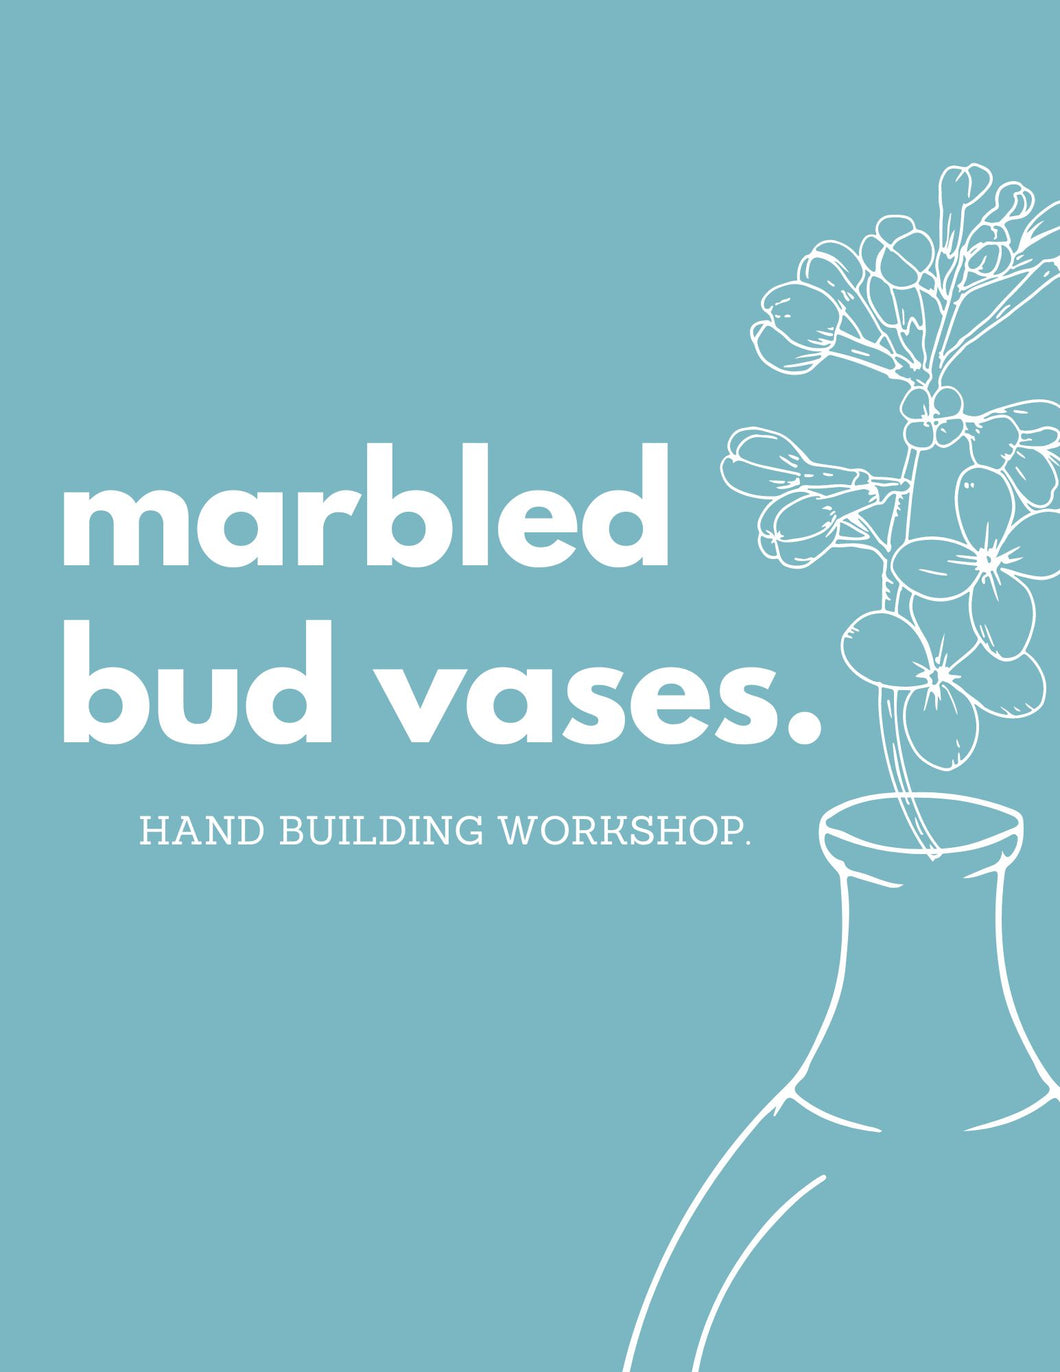 Marbled Bud Vases | Hand Building Workshop